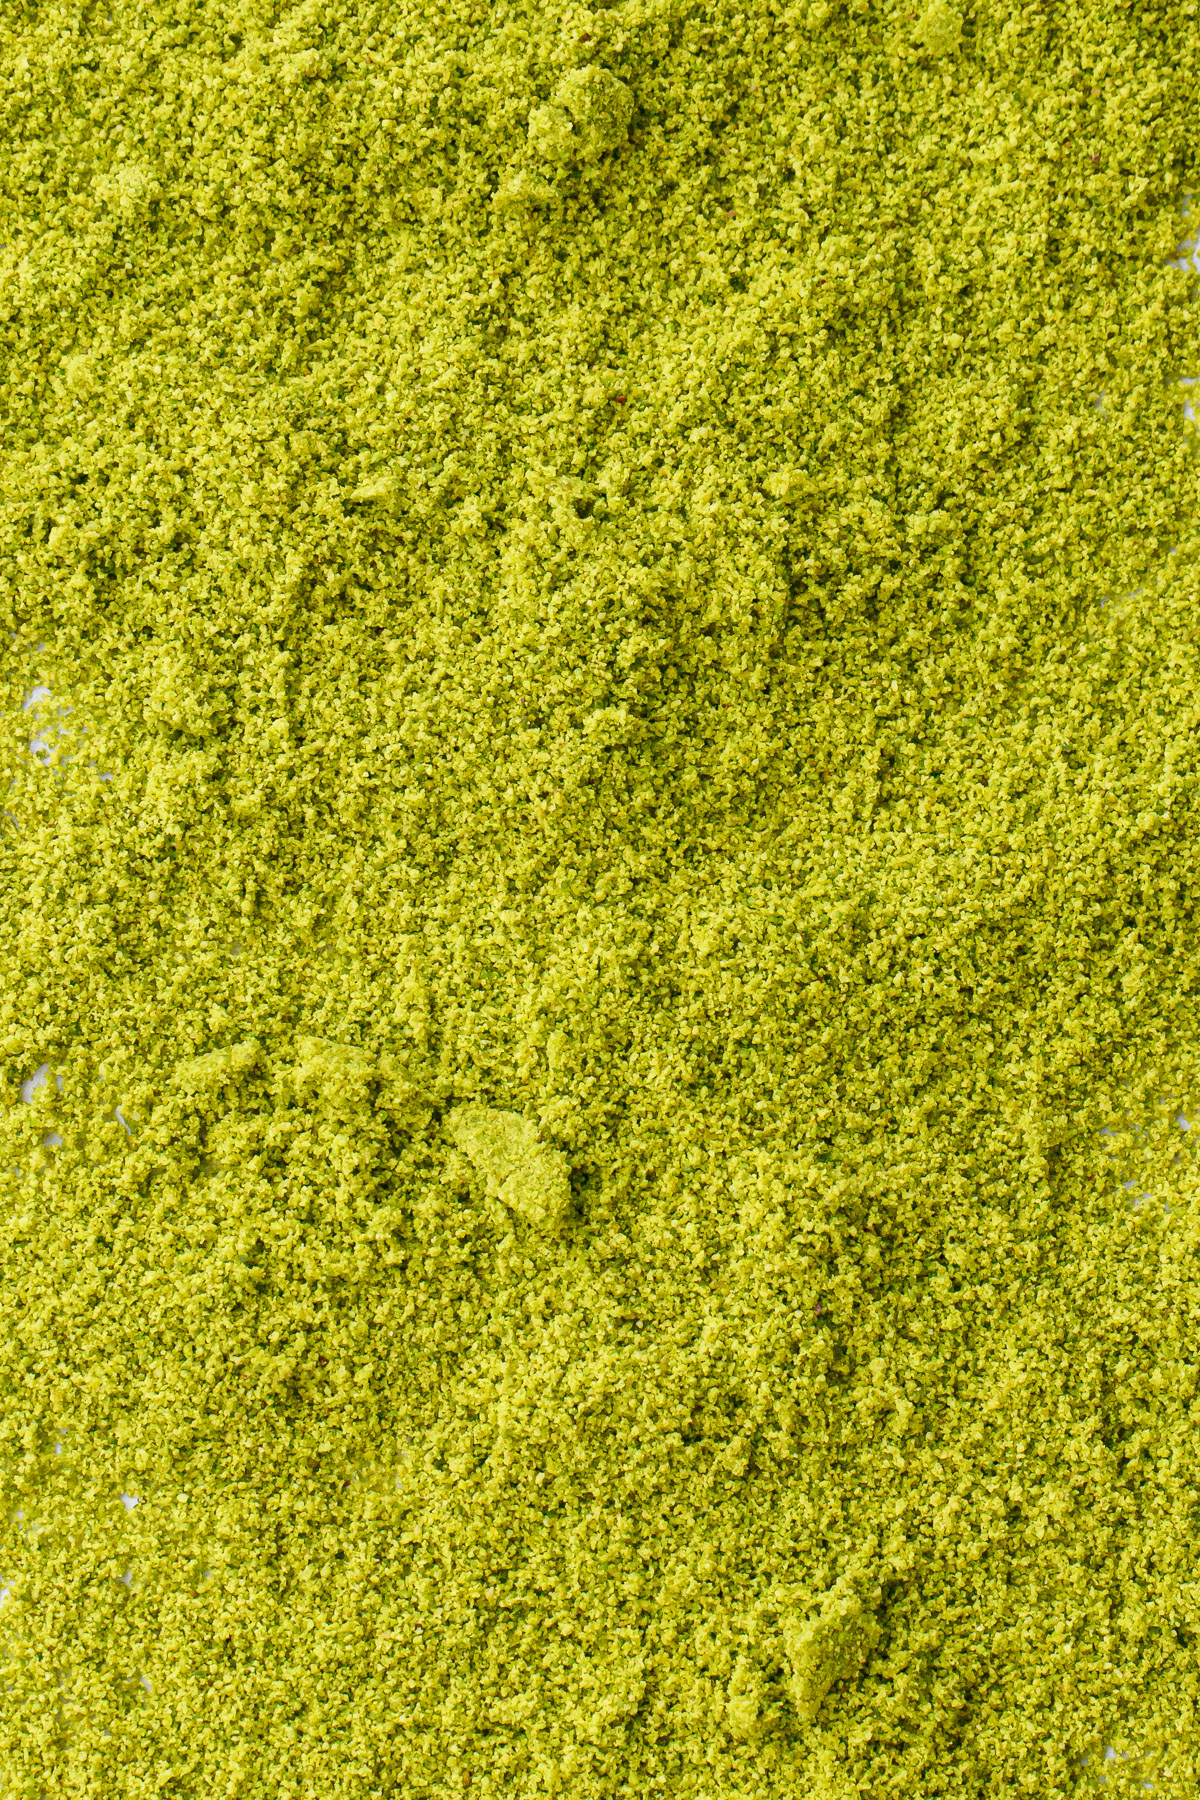 Closeup showing the fine clumps of of pistachio flour texture.